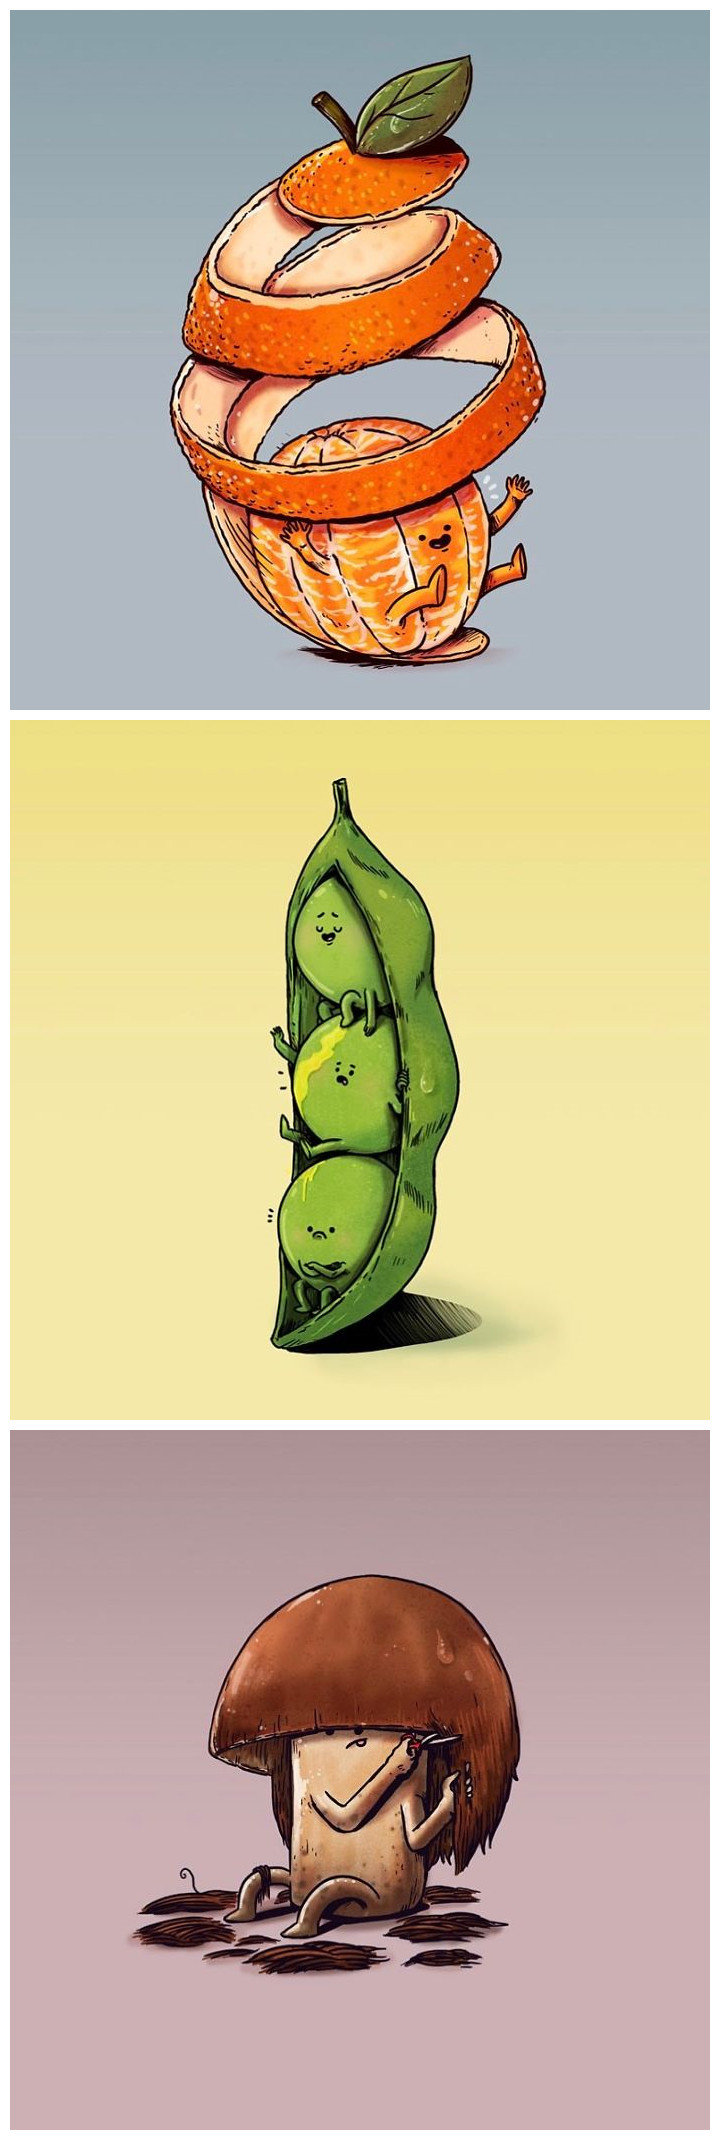 一组趣图,拟人化的水果蔬菜,看看逗笑你了没?